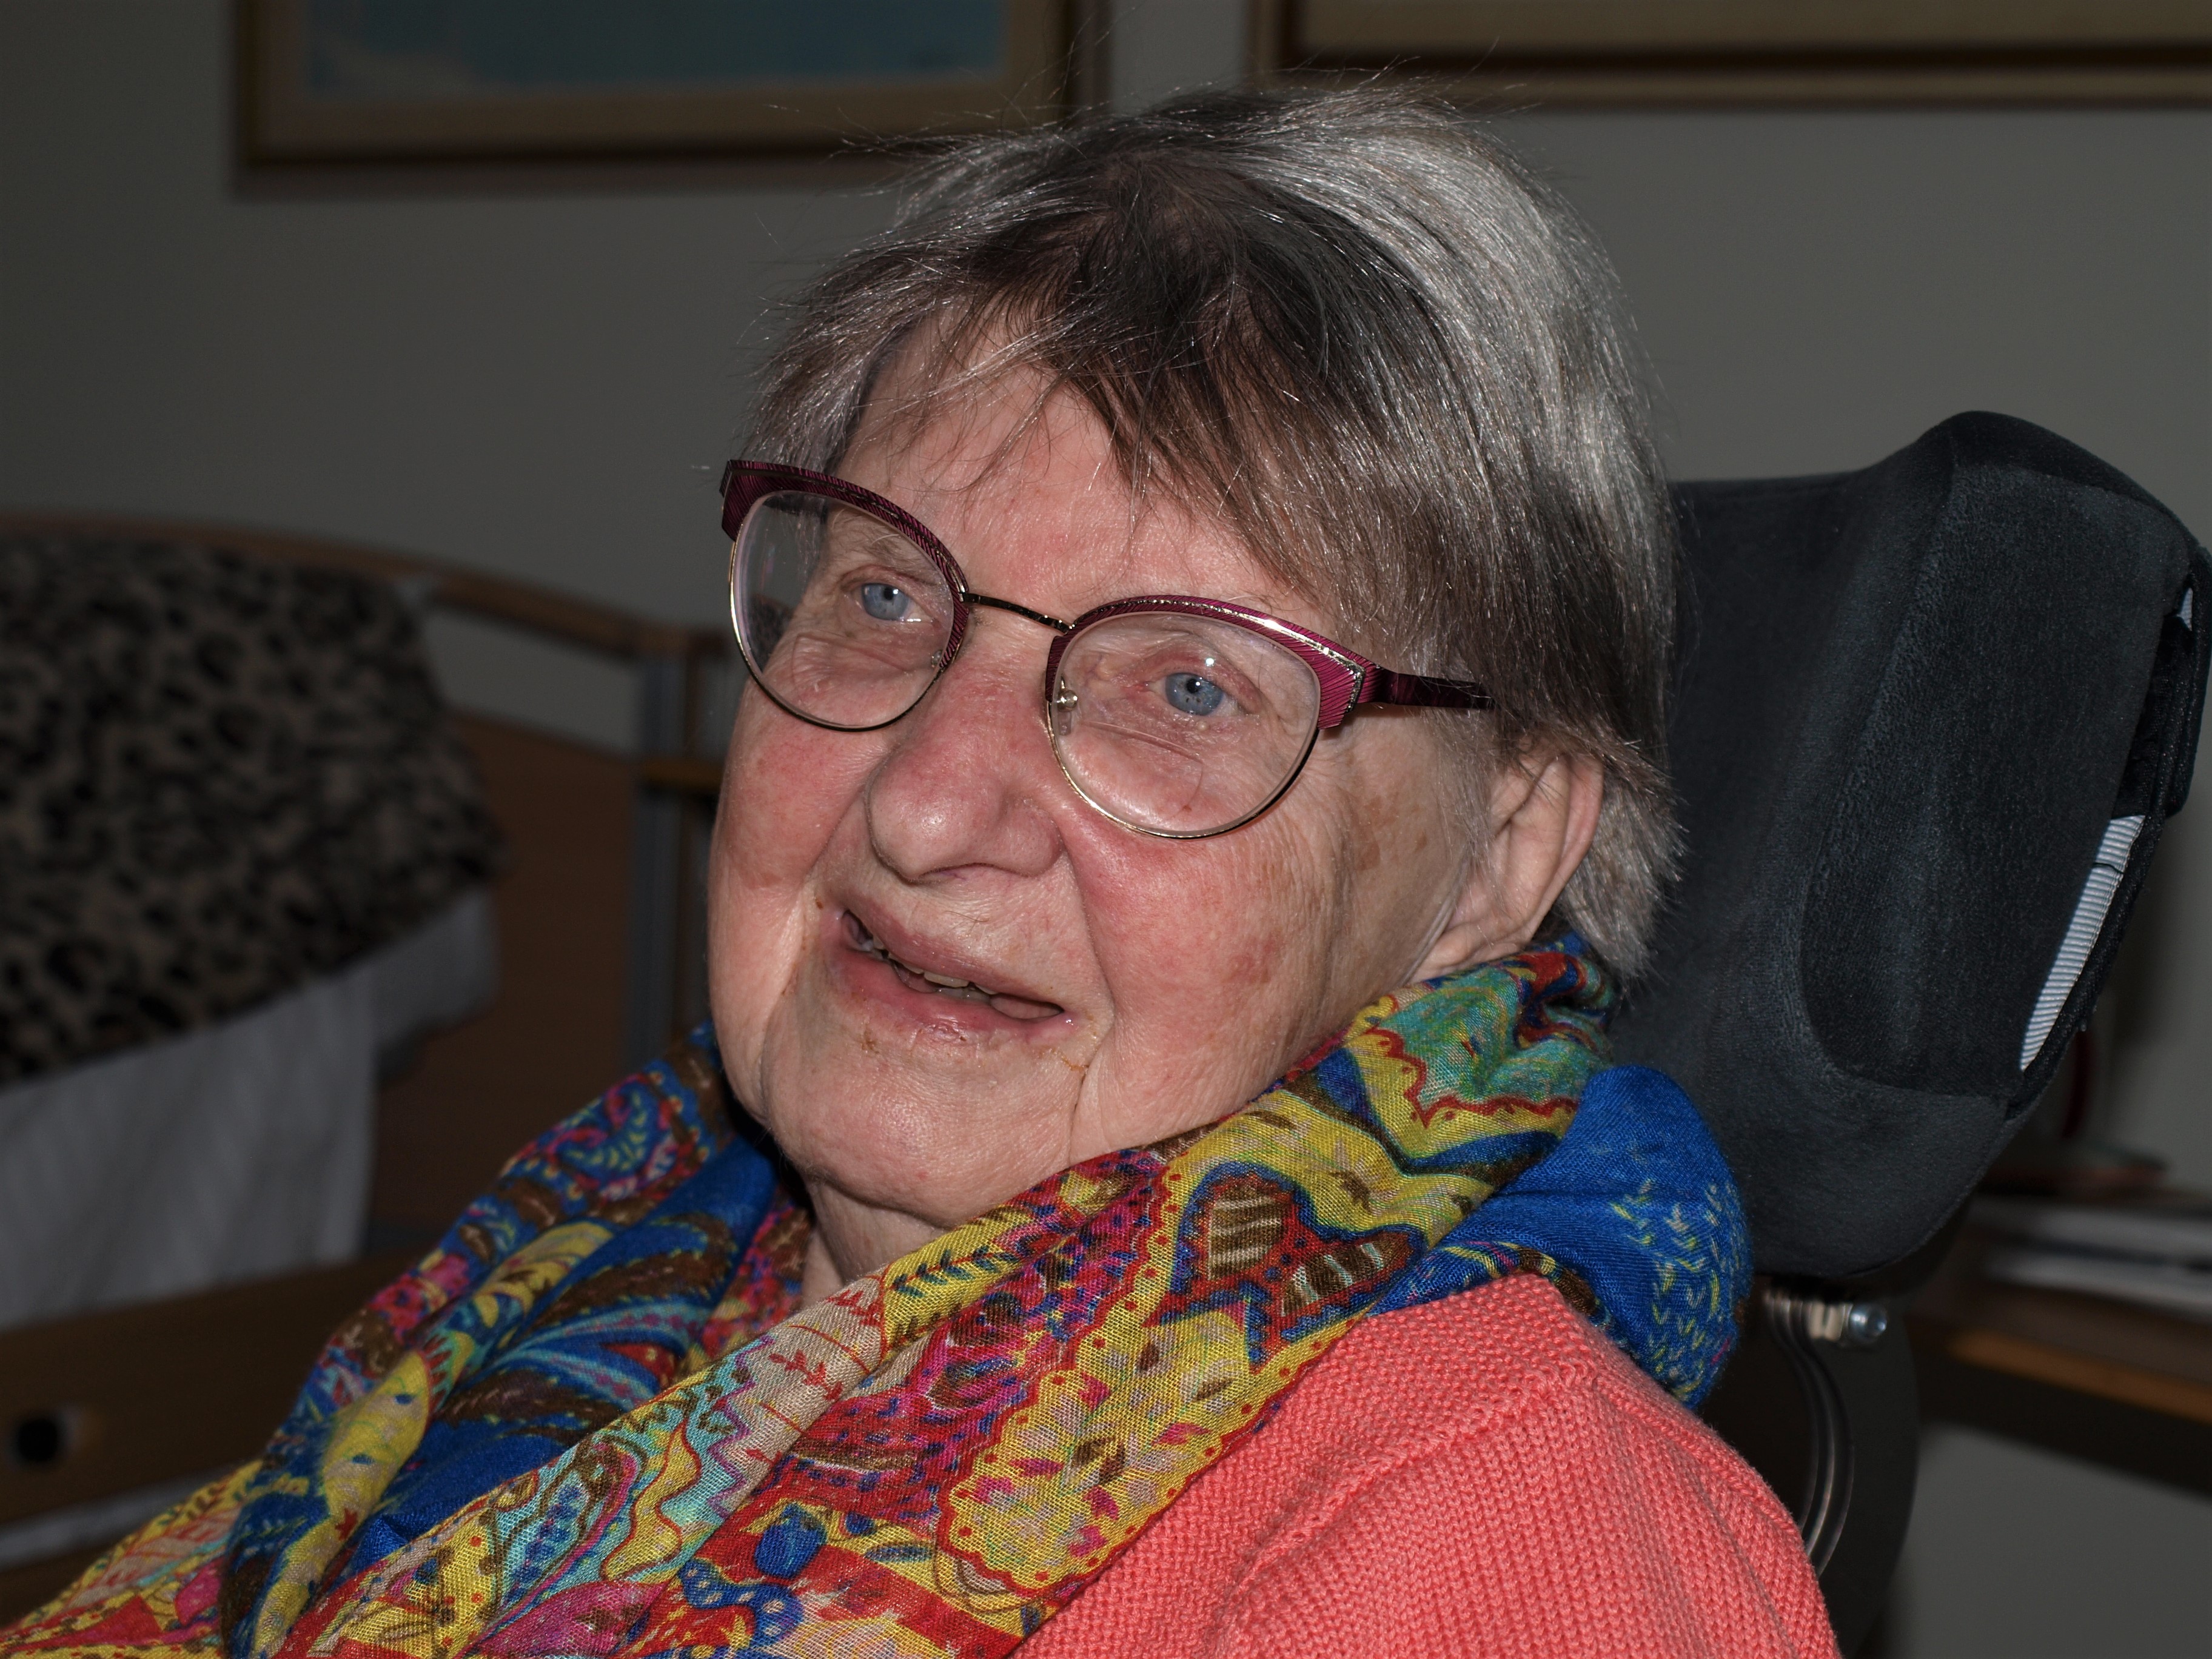 ”Roligt att få flytta till ett nybygge i min ålder” Marianne Attås, 87 år. Foto: Barbro Isaksson